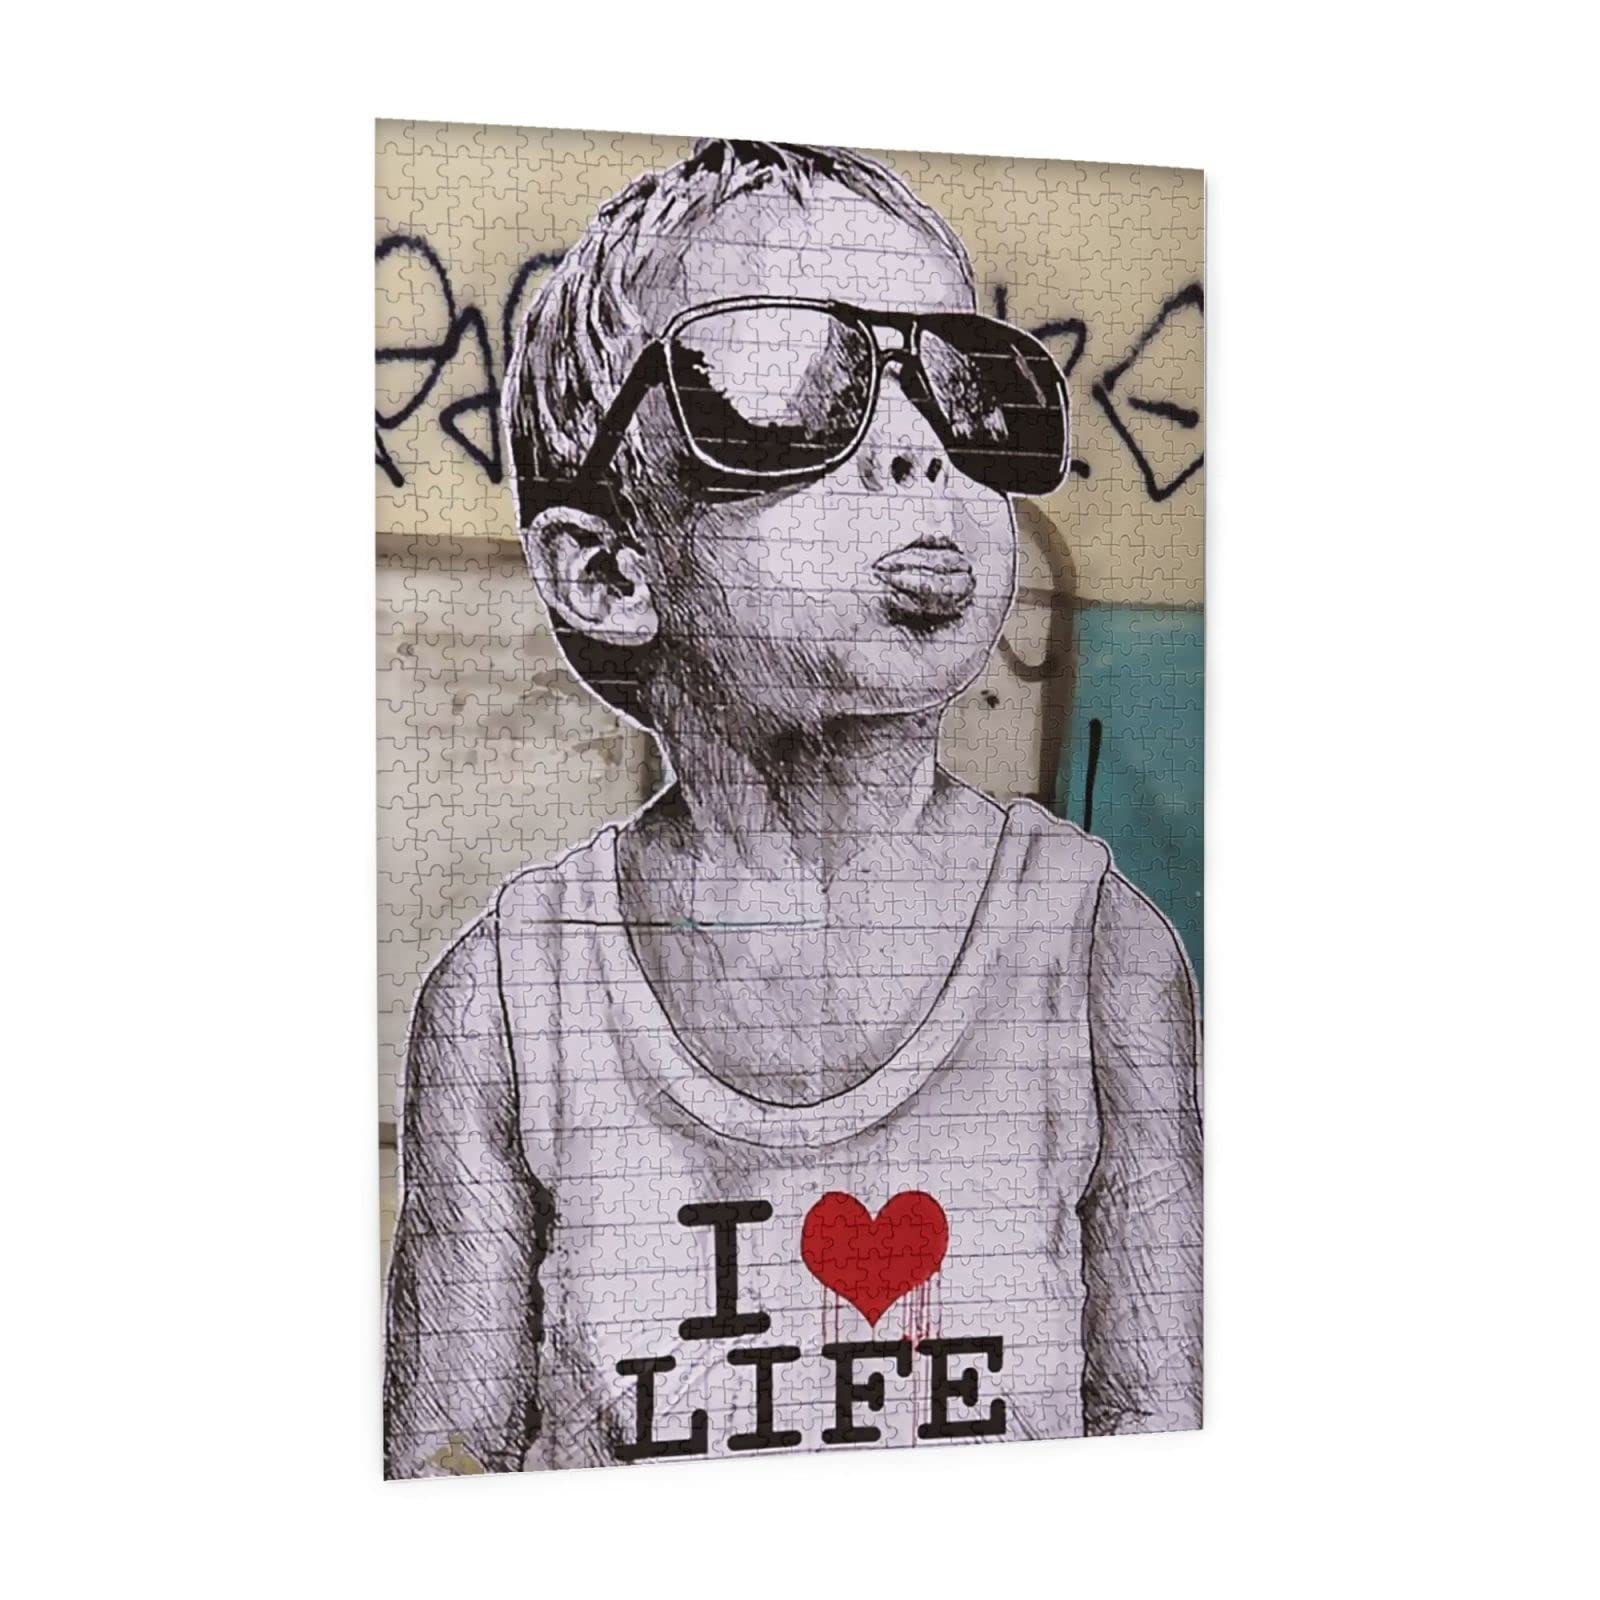 1000ピース ジグソーパズル Banksy バンクシー モダンアート 子供 木製パズル 壁飾り パズル装飾画 収納ケース付き おもちゃ 知育減圧 親